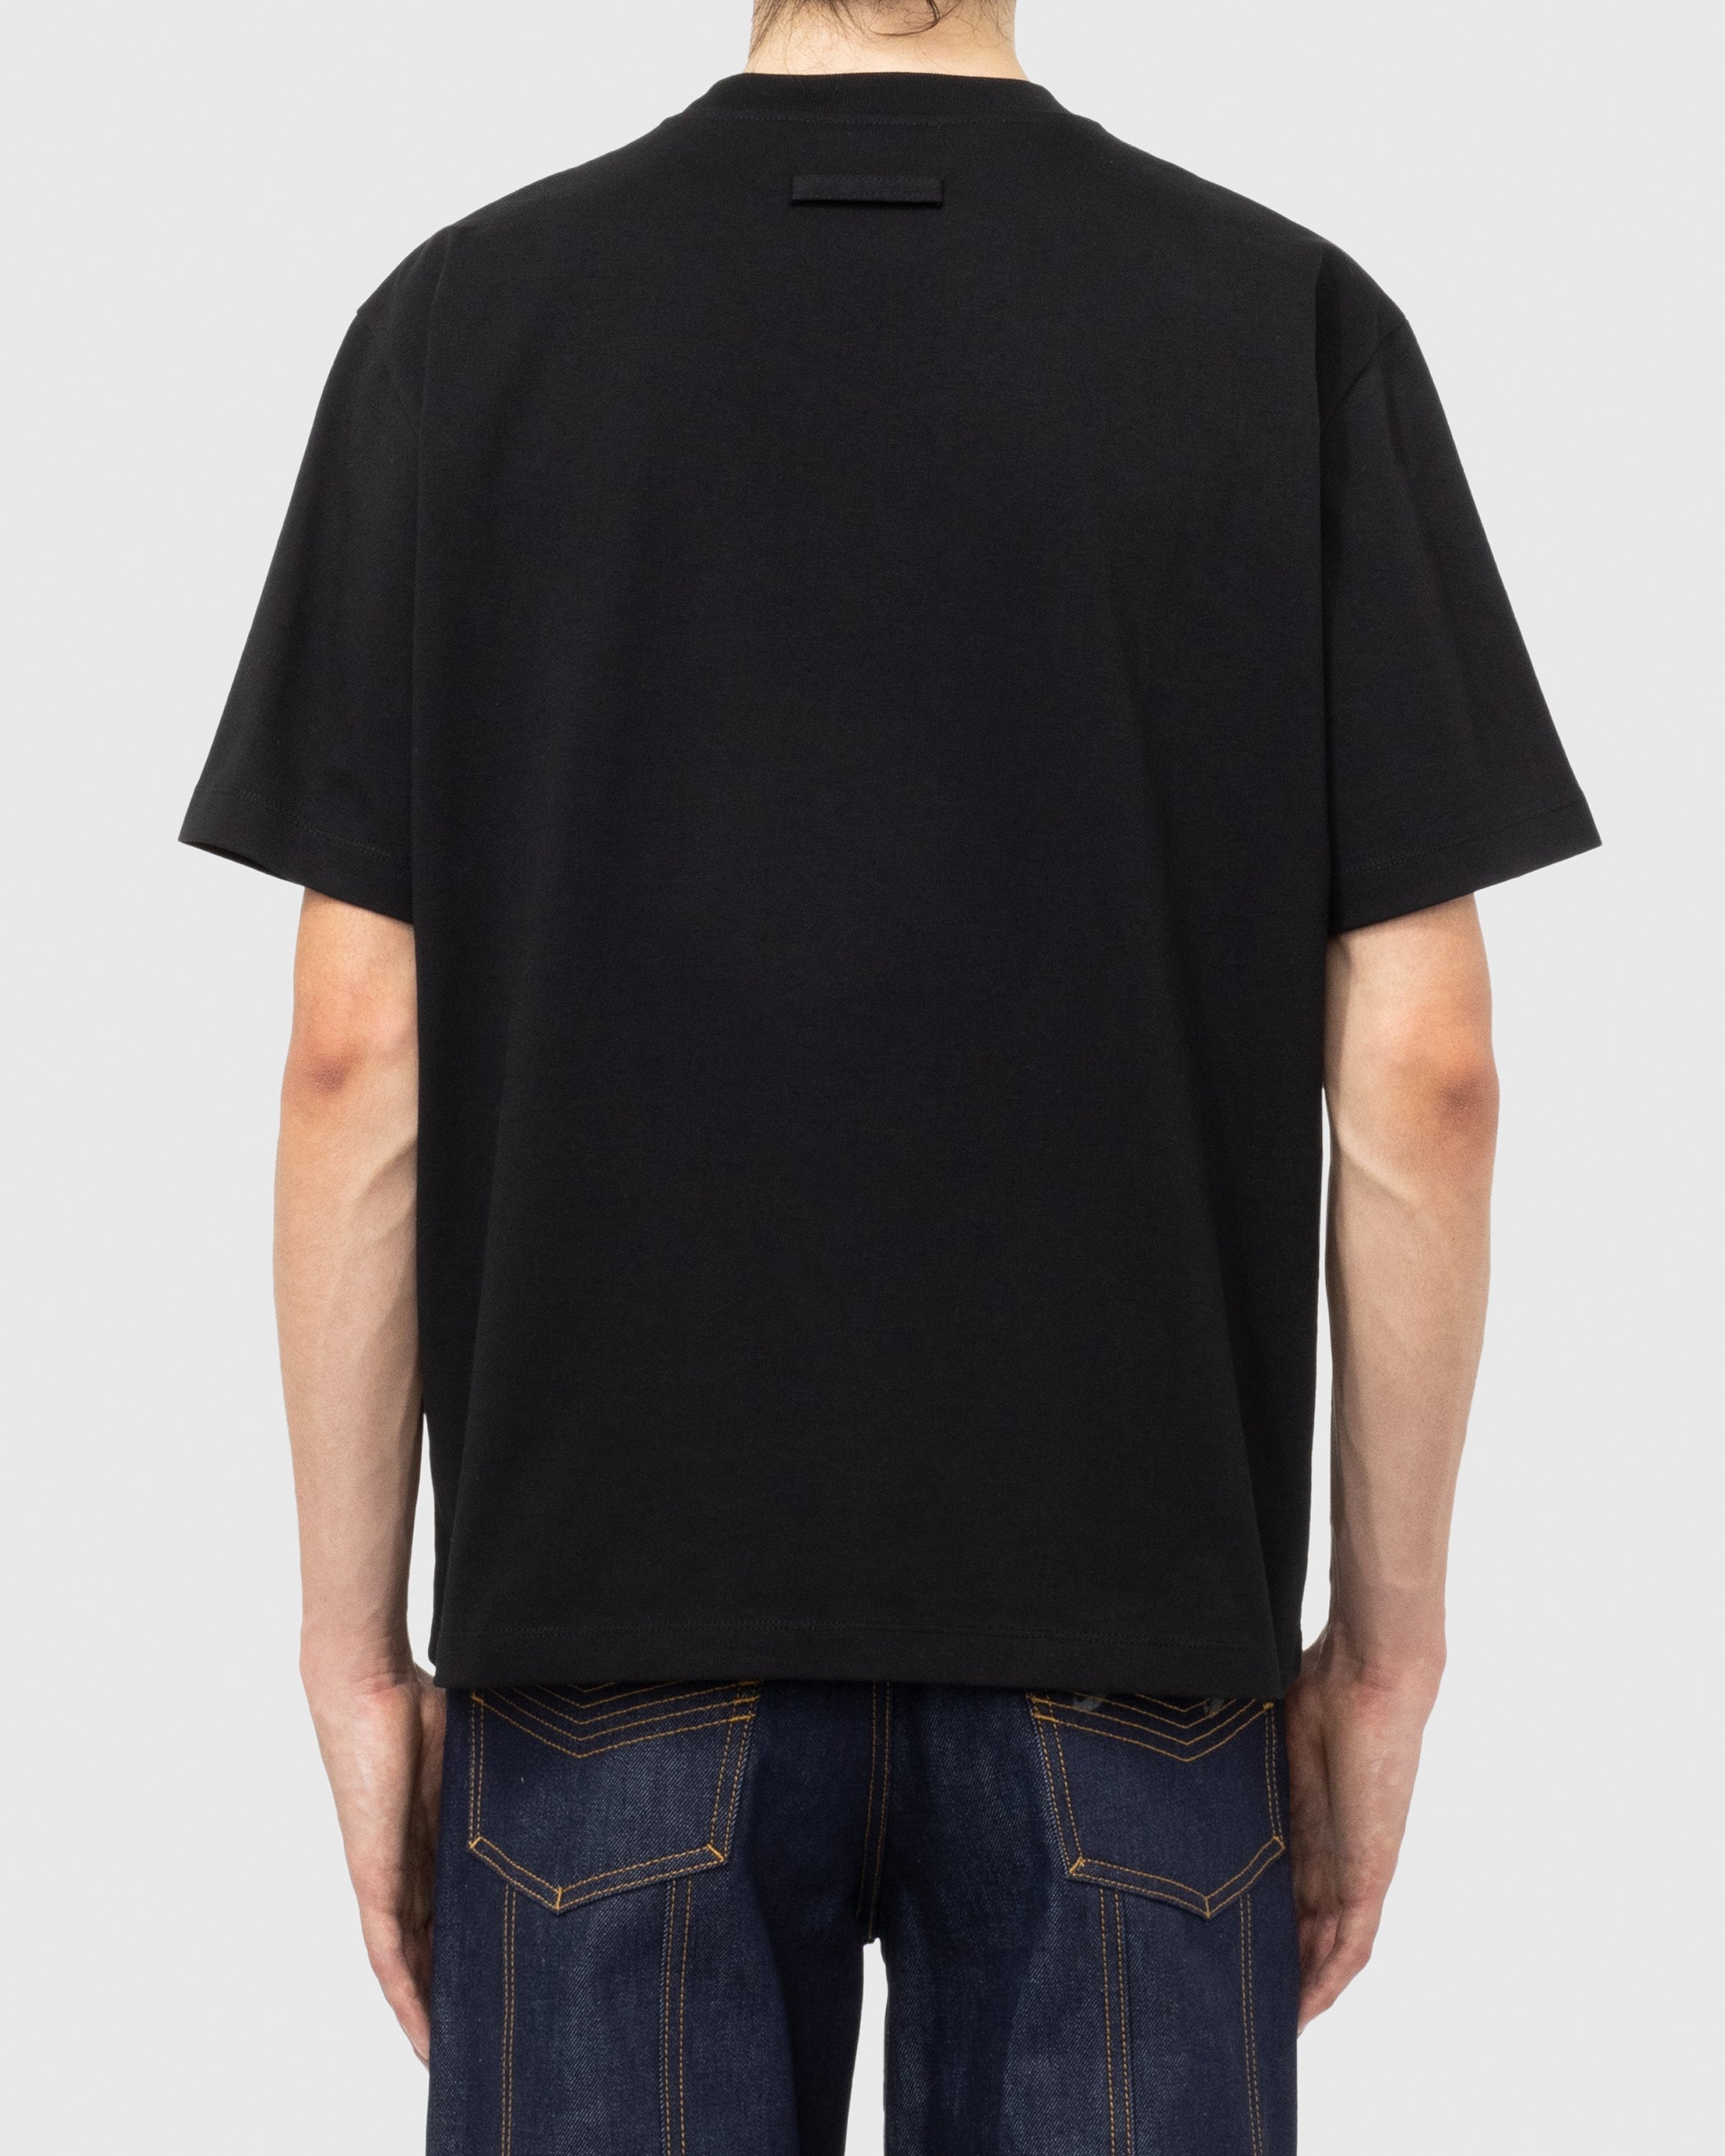 Jean Paul Gaultier – Évidemment T-Shirt Black - T-Shirts - Black - Image 4